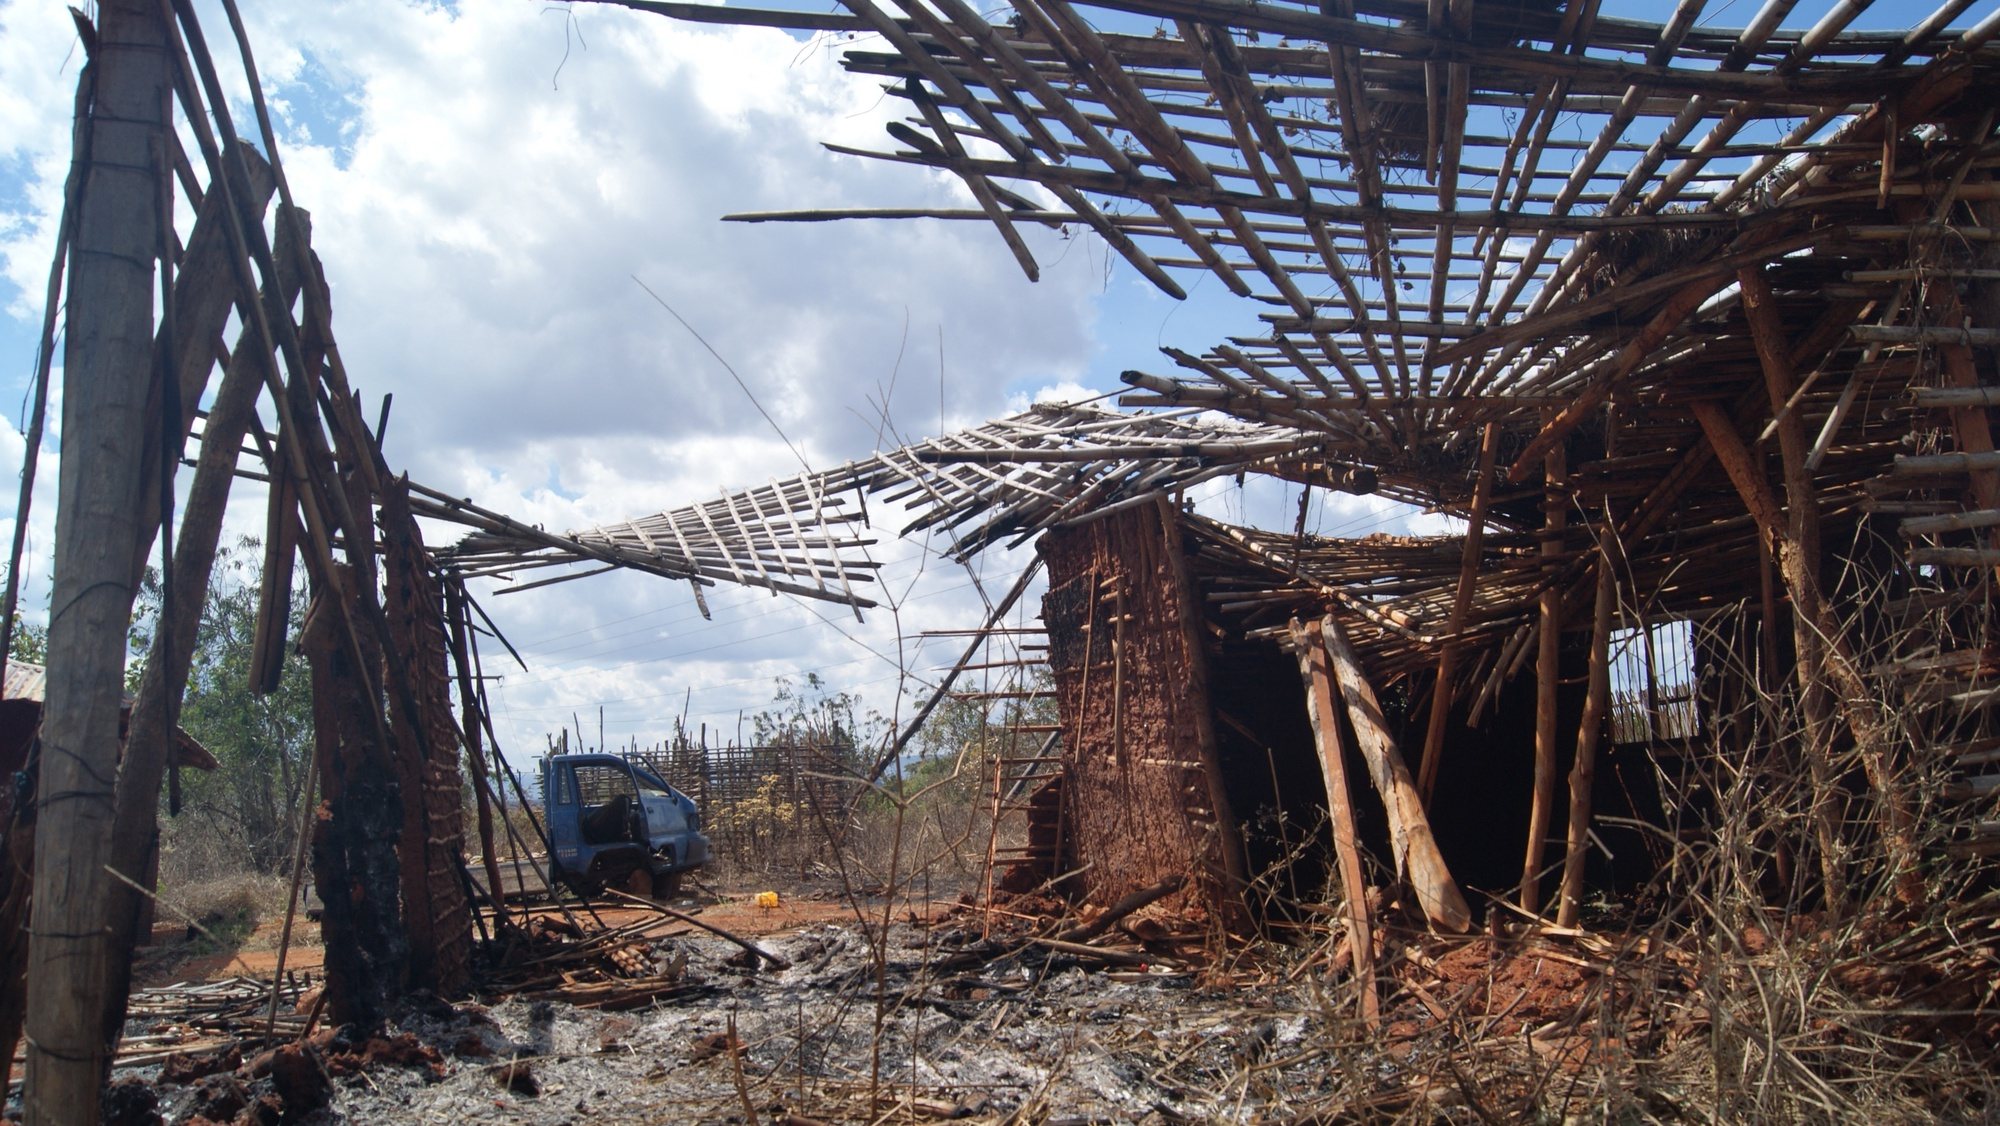 Ruínas de uma casa destruída por rebeldes na aldeia 19 de outubro, em Quissanga, Cabo Delgado, Moçambique, 21 de agosto de 2021. As vilas e aldeias devastadas por rebeldes nos distritos de Quissanga e Macomia têm as marcas do terror estampadas em cada esquina e, entre ruínas, ensaia-se a reconstrução, mas o trauma é grande e paira ainda o medo entre as comunidades (ACOMPANHA TEXTO DO DIA 23 DE AGOSTO DE 2021). LUÍSA NHANTUMBO/LUSA